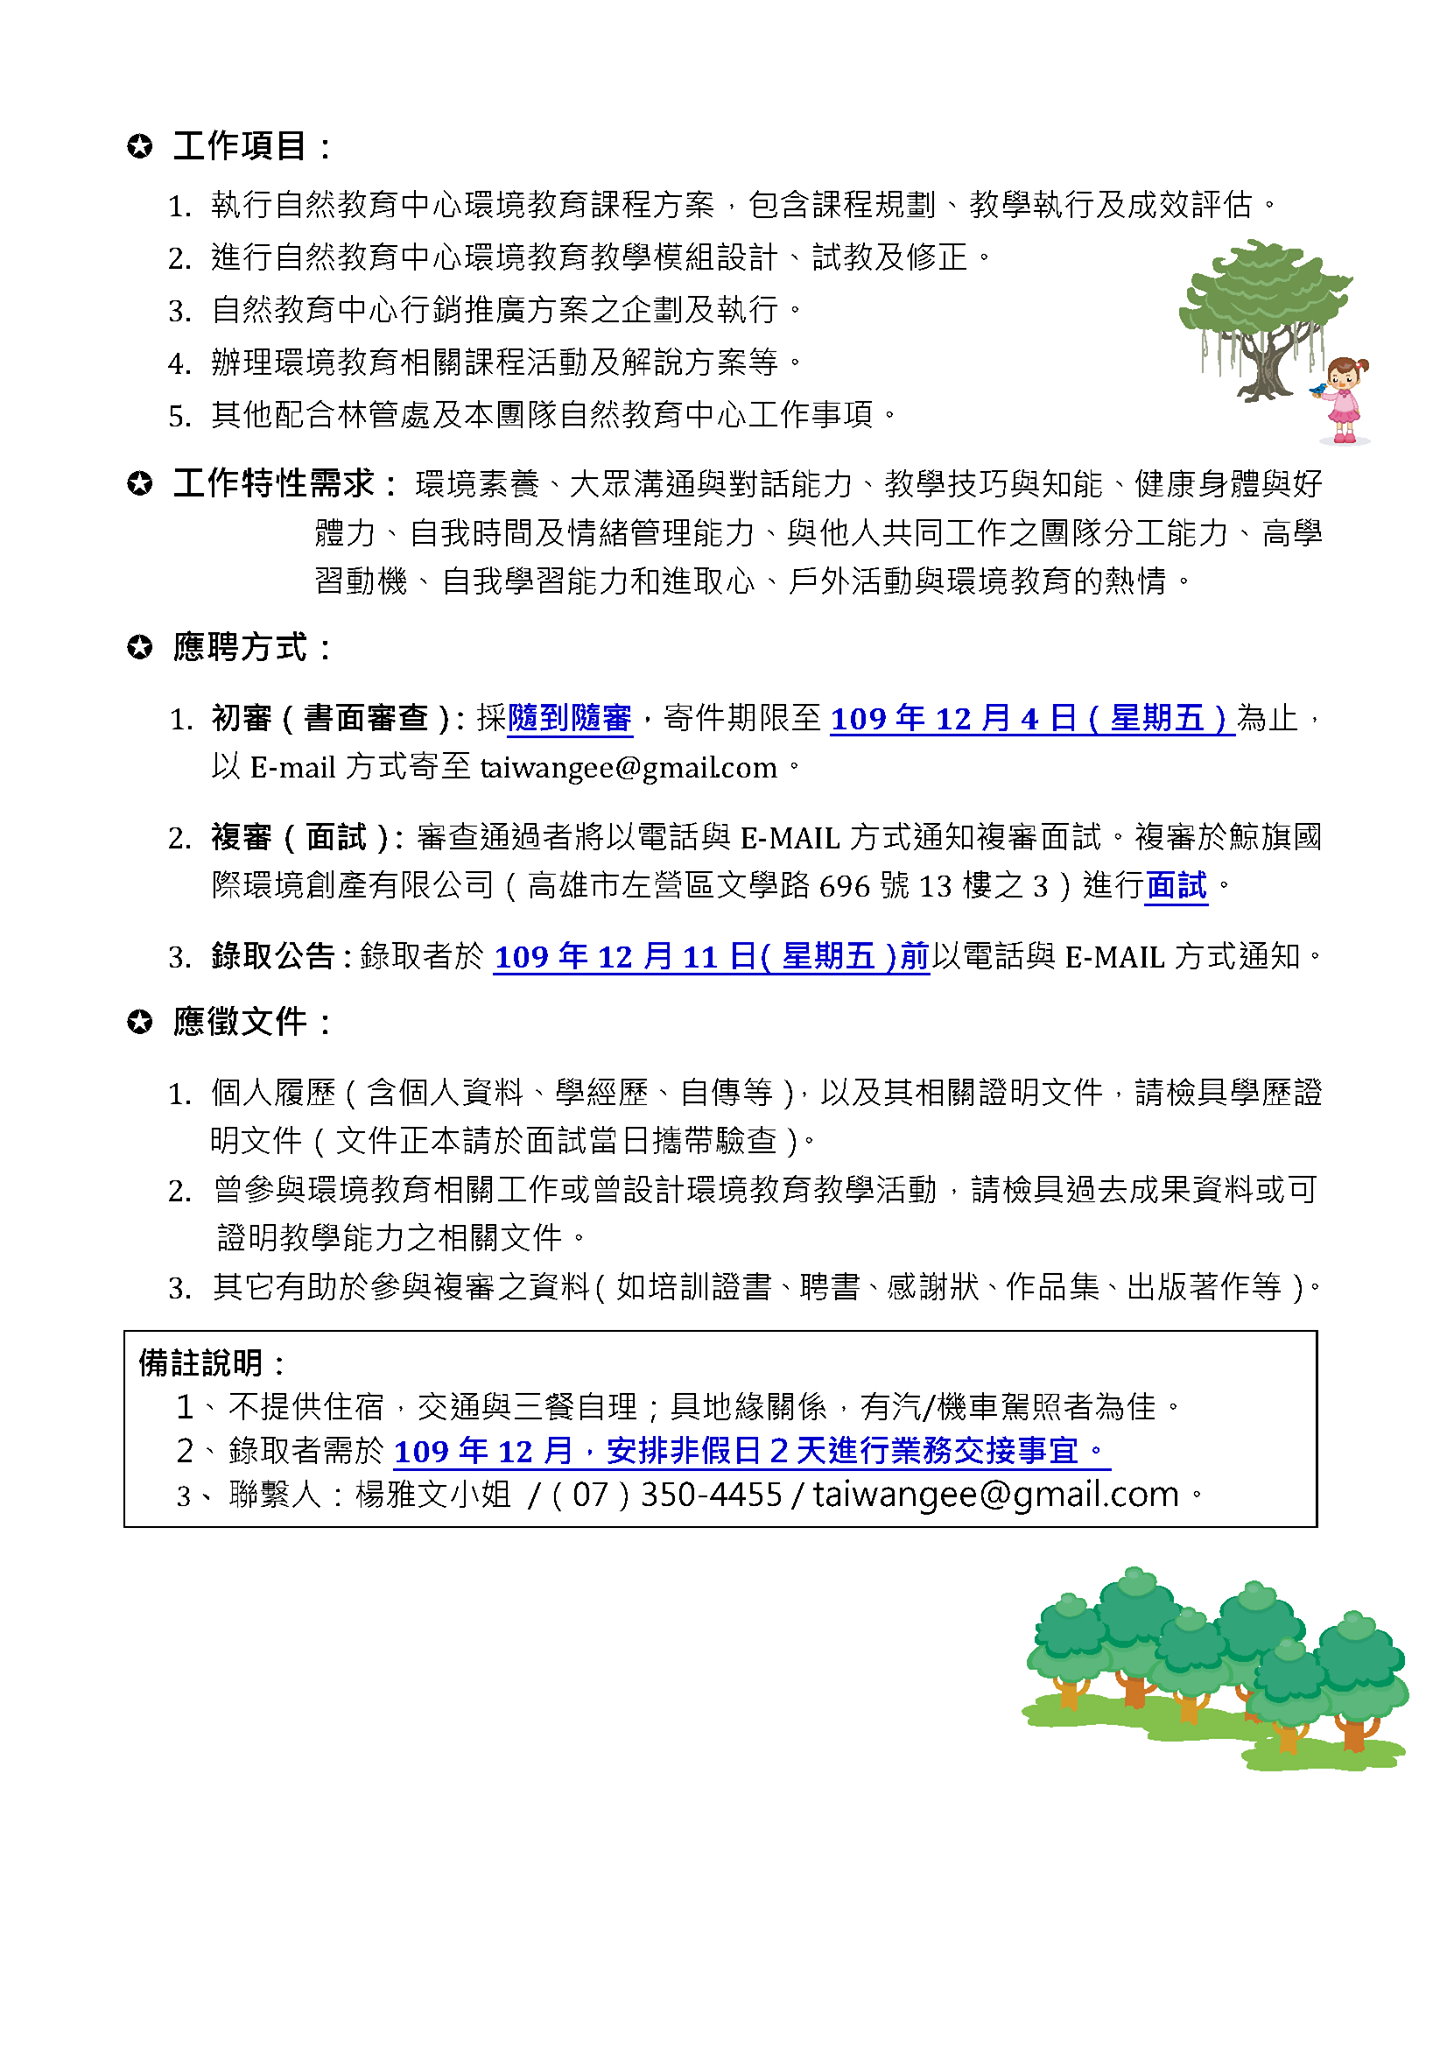 知本自然教育中心徵環境教育教師-3.jpg - 日誌用相簿